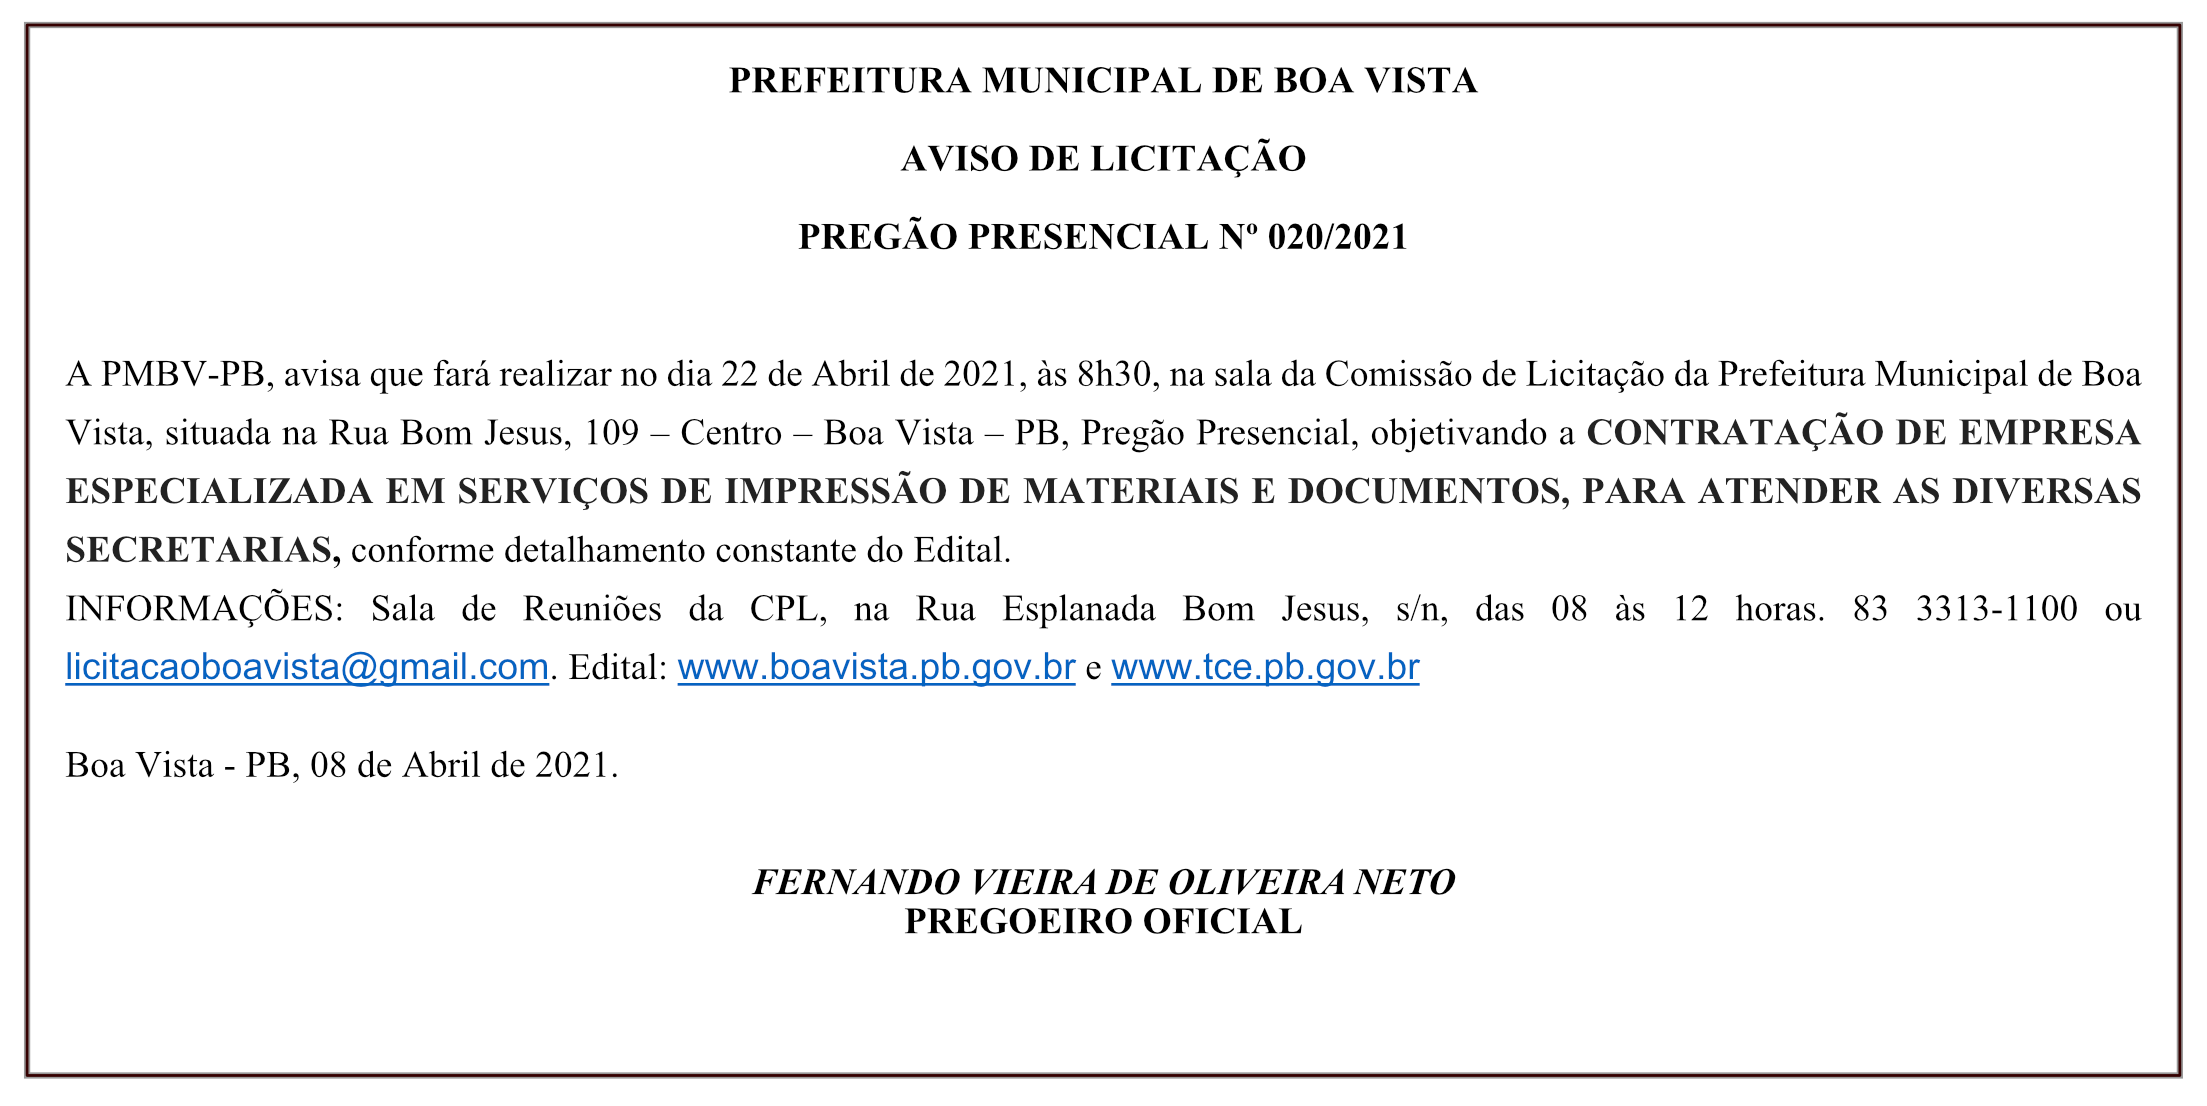 PREFEITURA MUNICIPAL DE BOA VISTA – AVISO DE LICITAÇÃO – PREGÃO PRESENCIAL Nº 020/2021